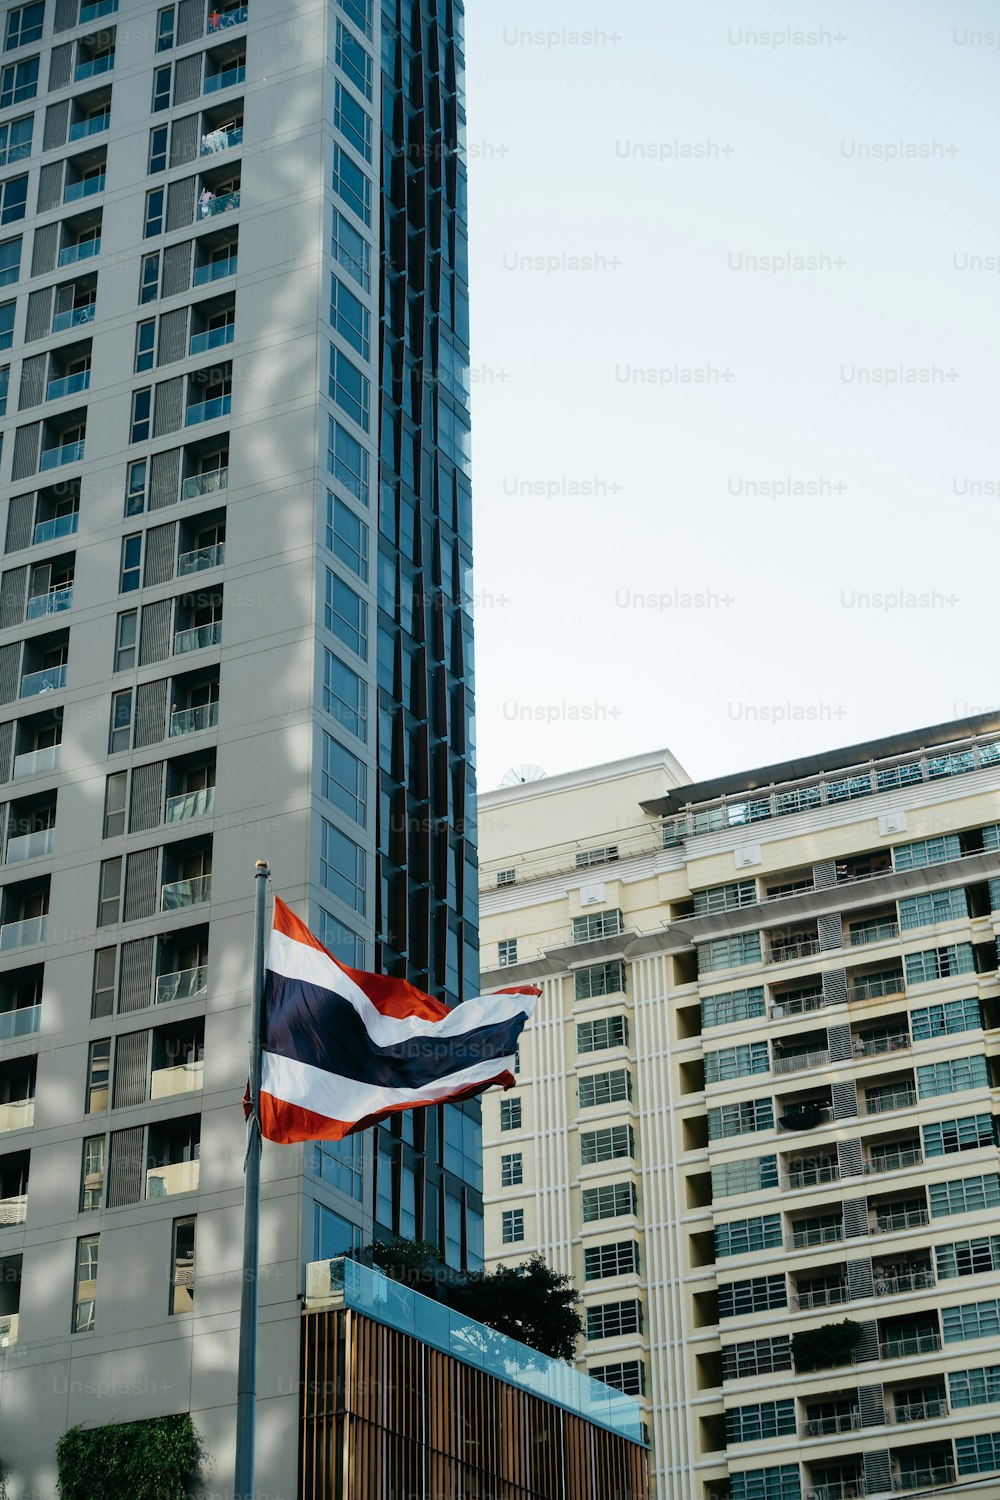 Una bandera ondeando frente a un edificio alto